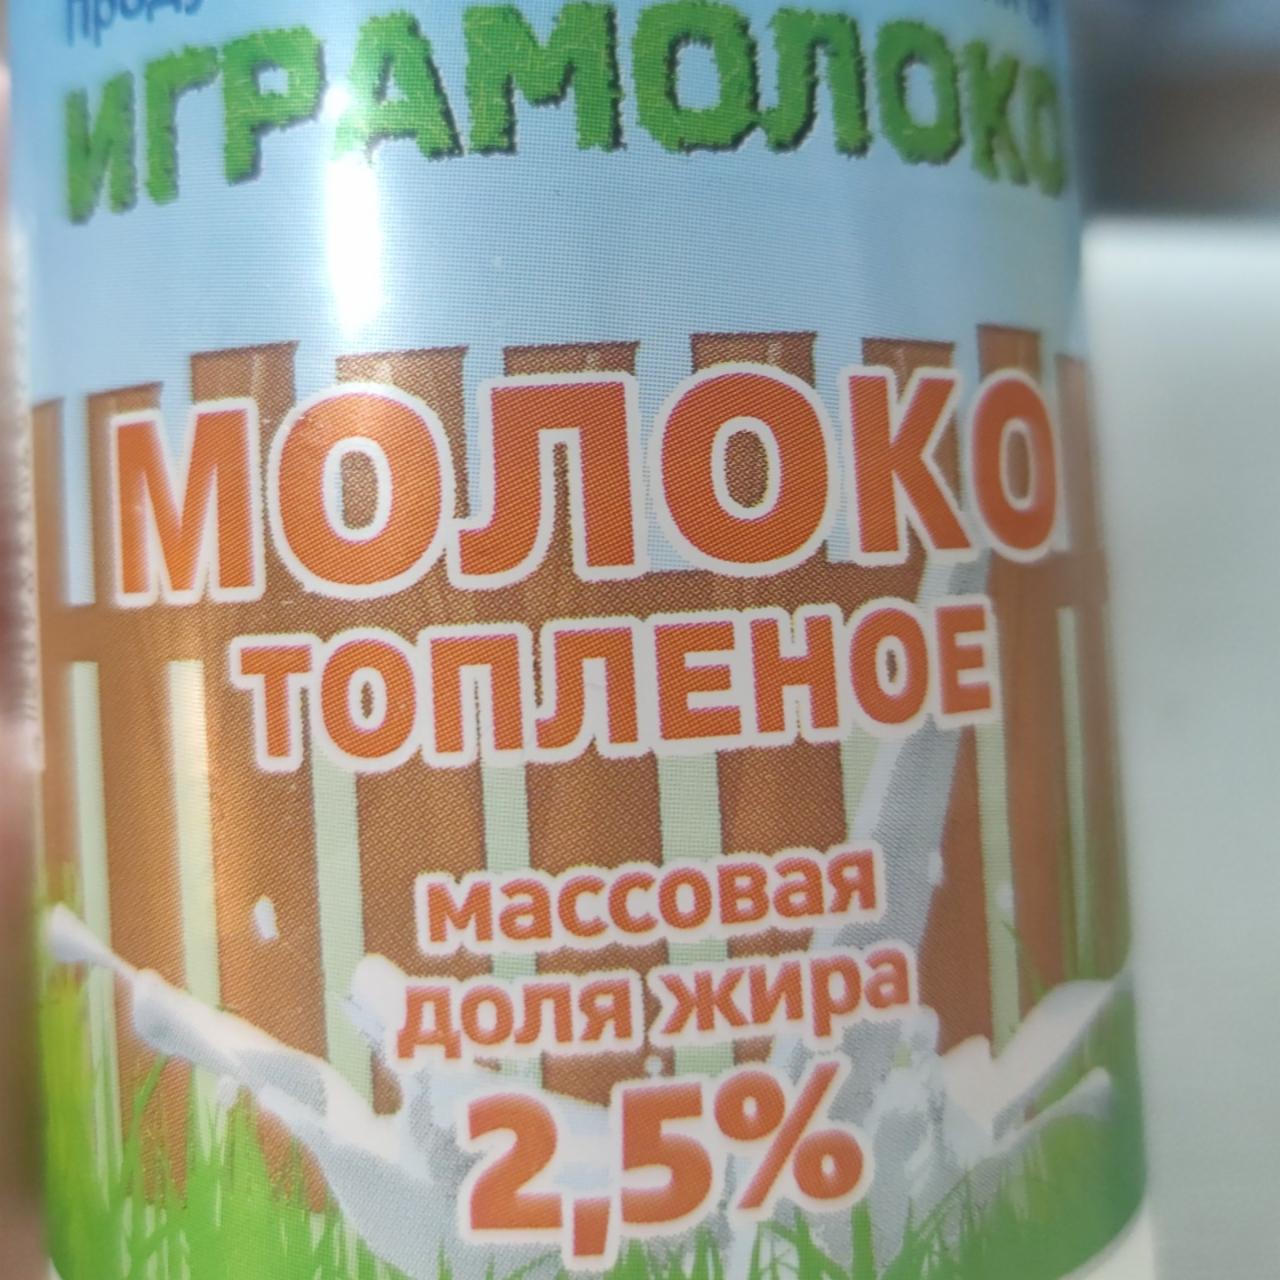 Фото - Молоко топленое 2,5% Играмолоко